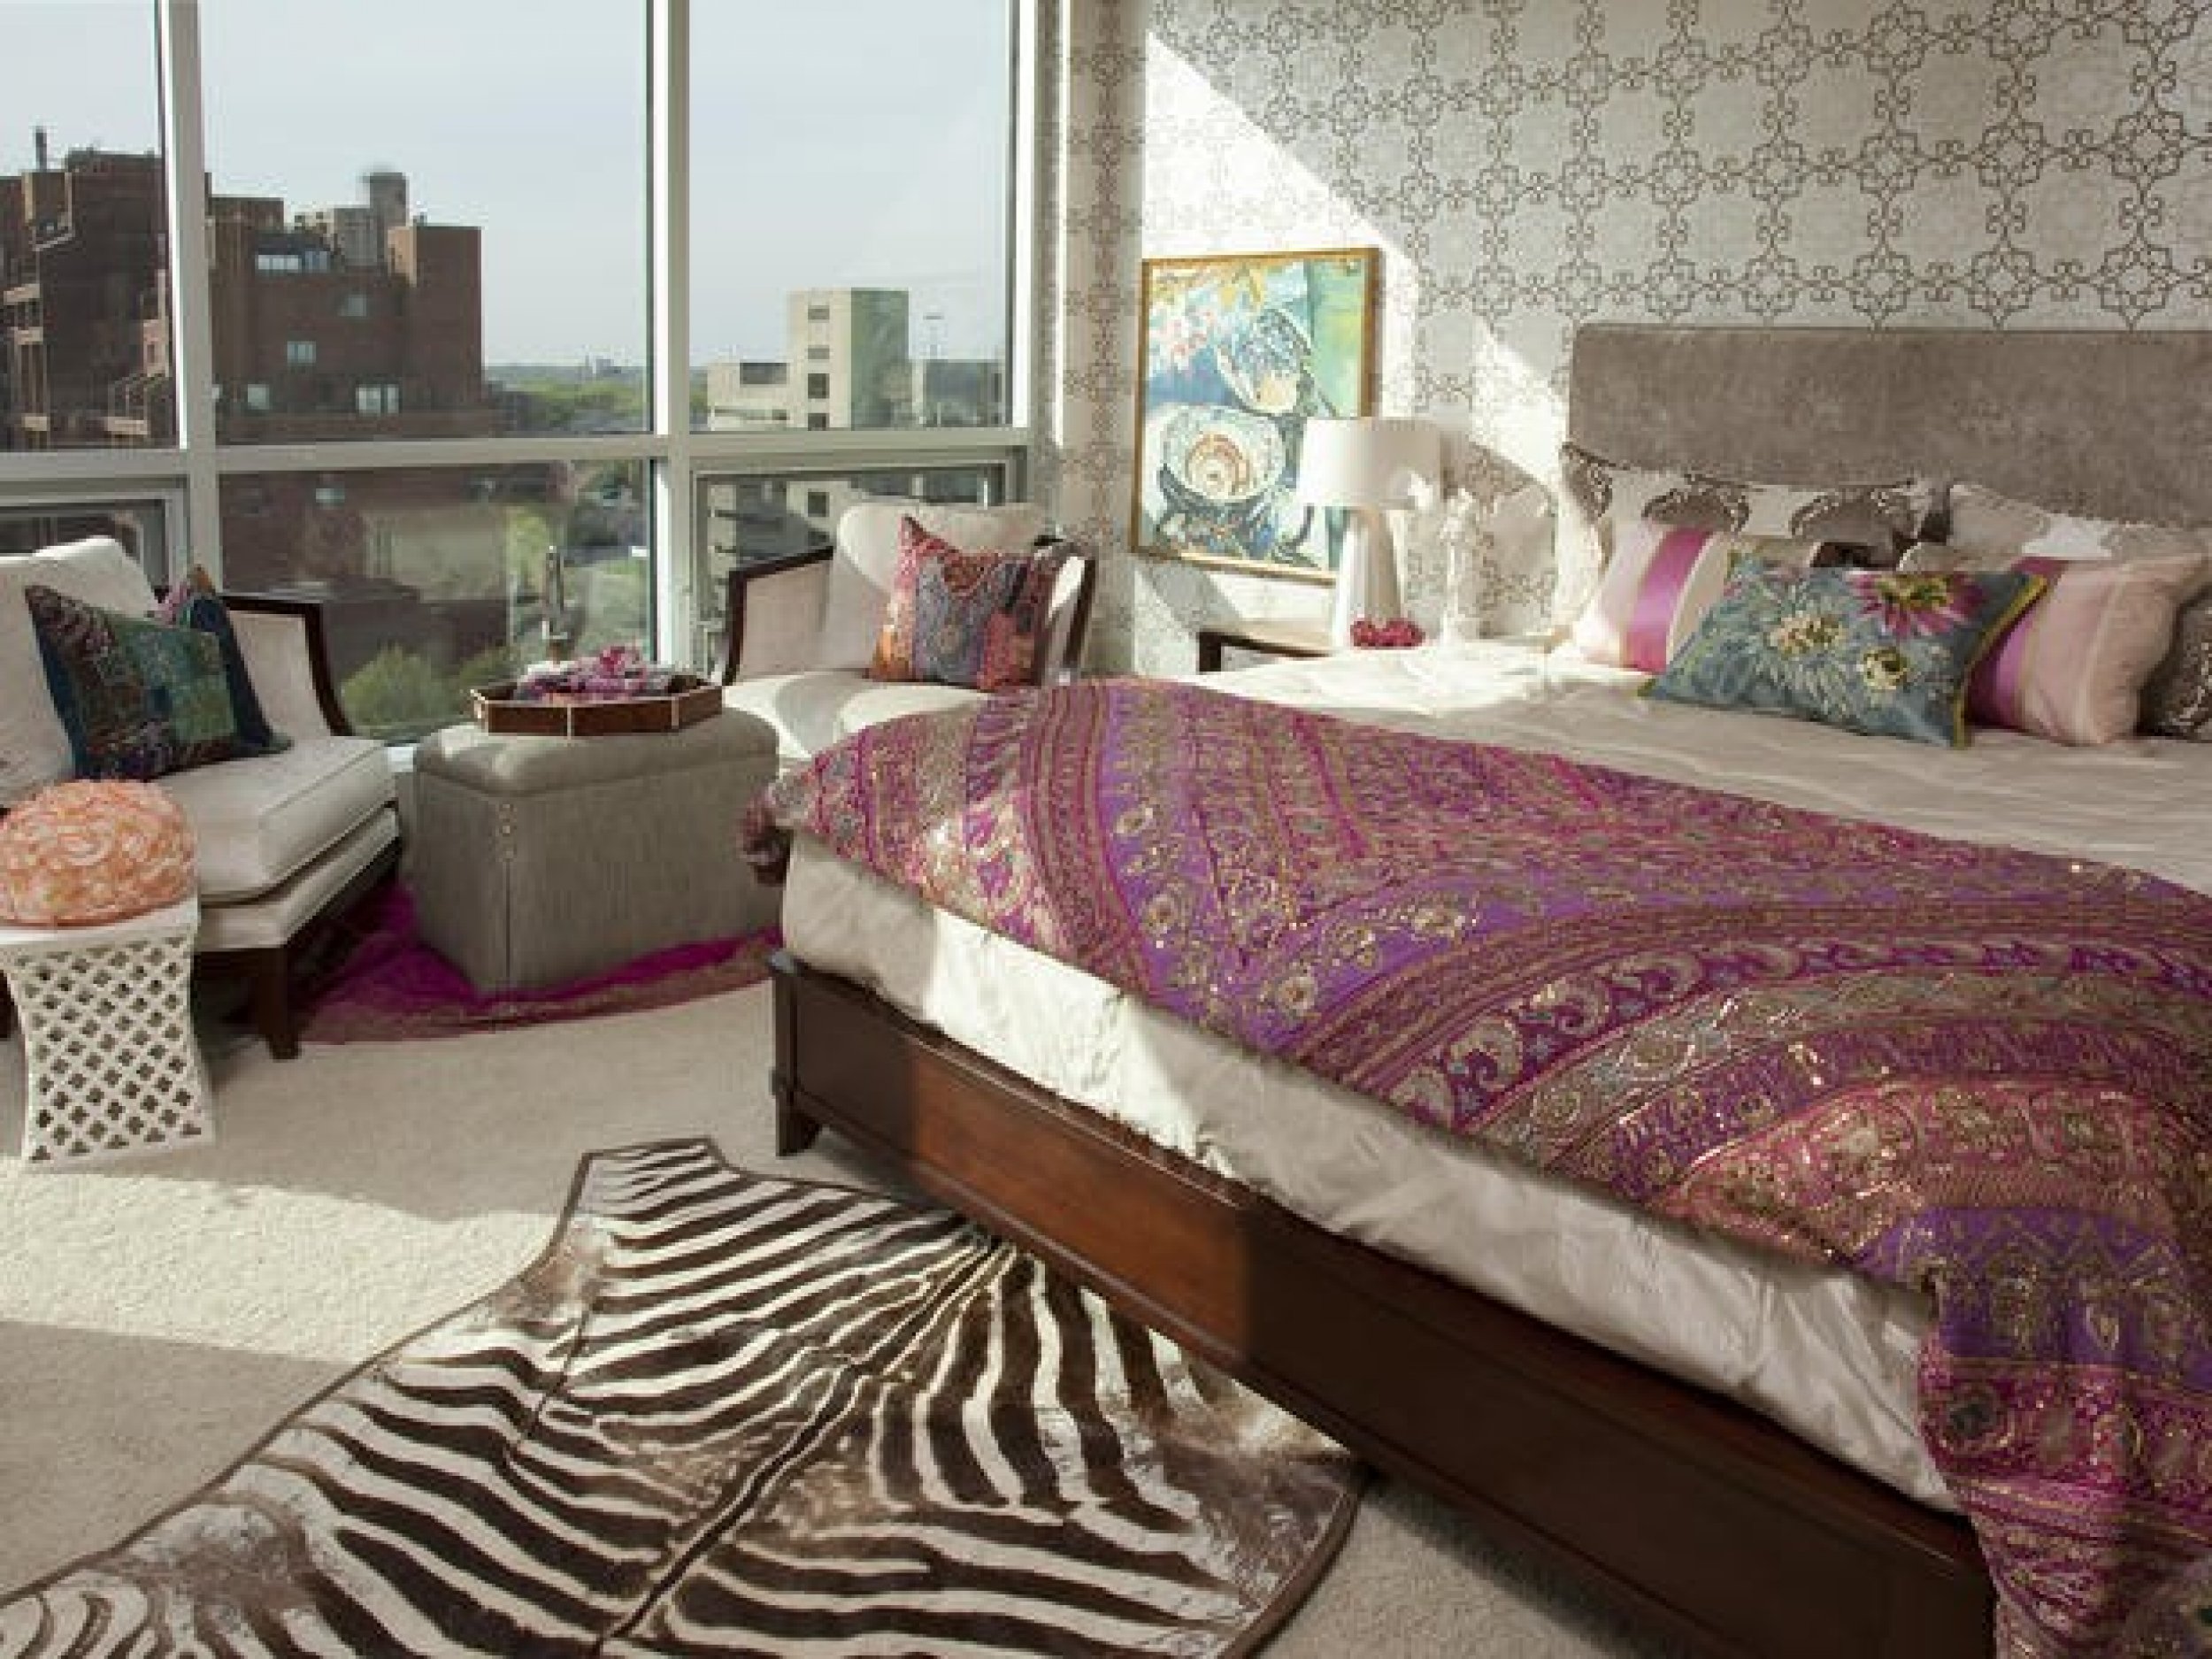 Top 10 Best bedroom diesigns